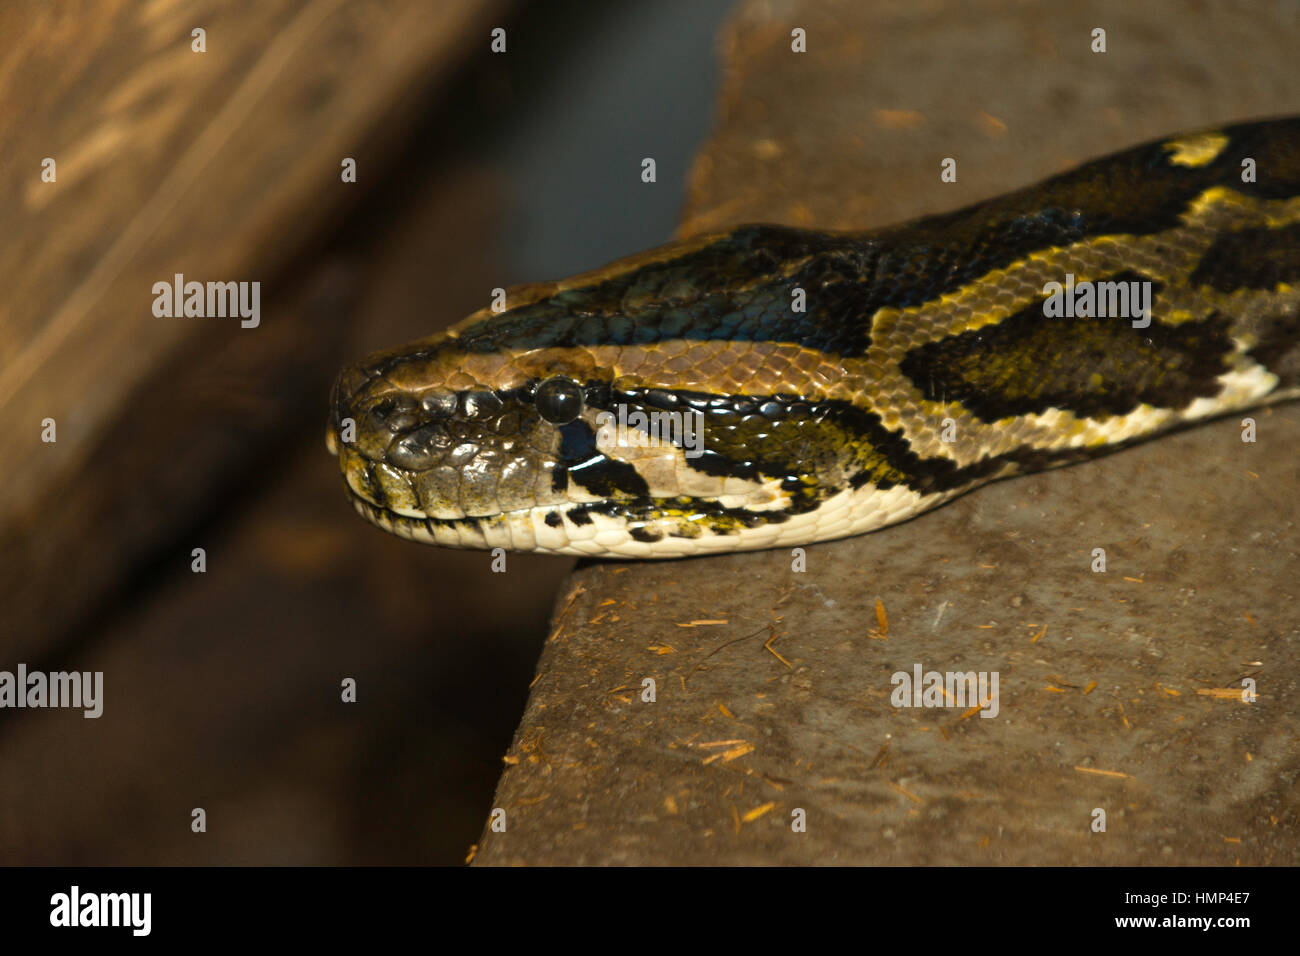 Primer plano de la cabeza y los ojos de serpiente que repta sobre la tierra Foto de stock